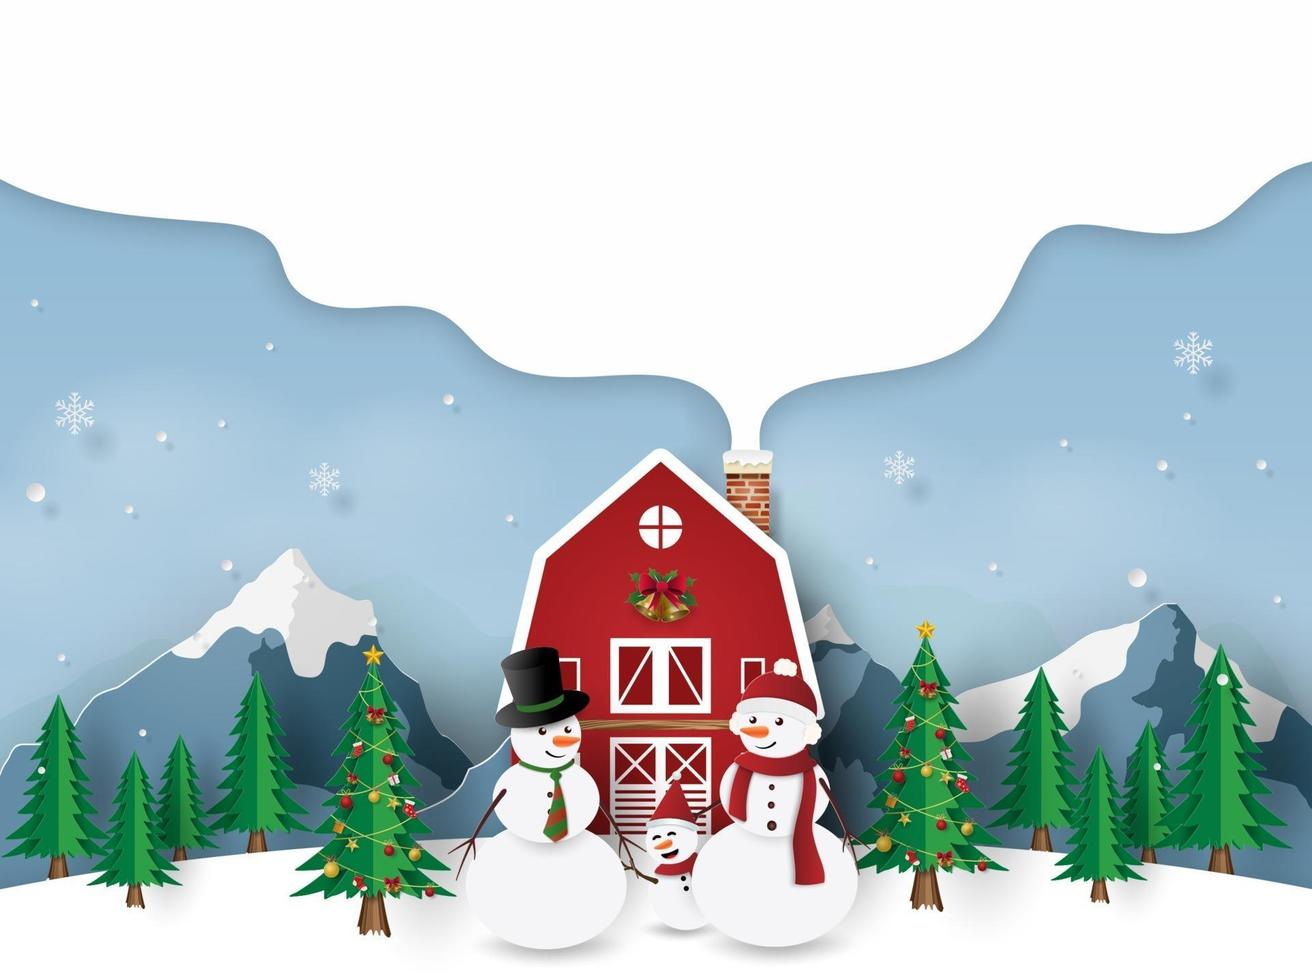 bonhomme de neige famille avec maison rouge le jour de noël, joyeux noël vecteur